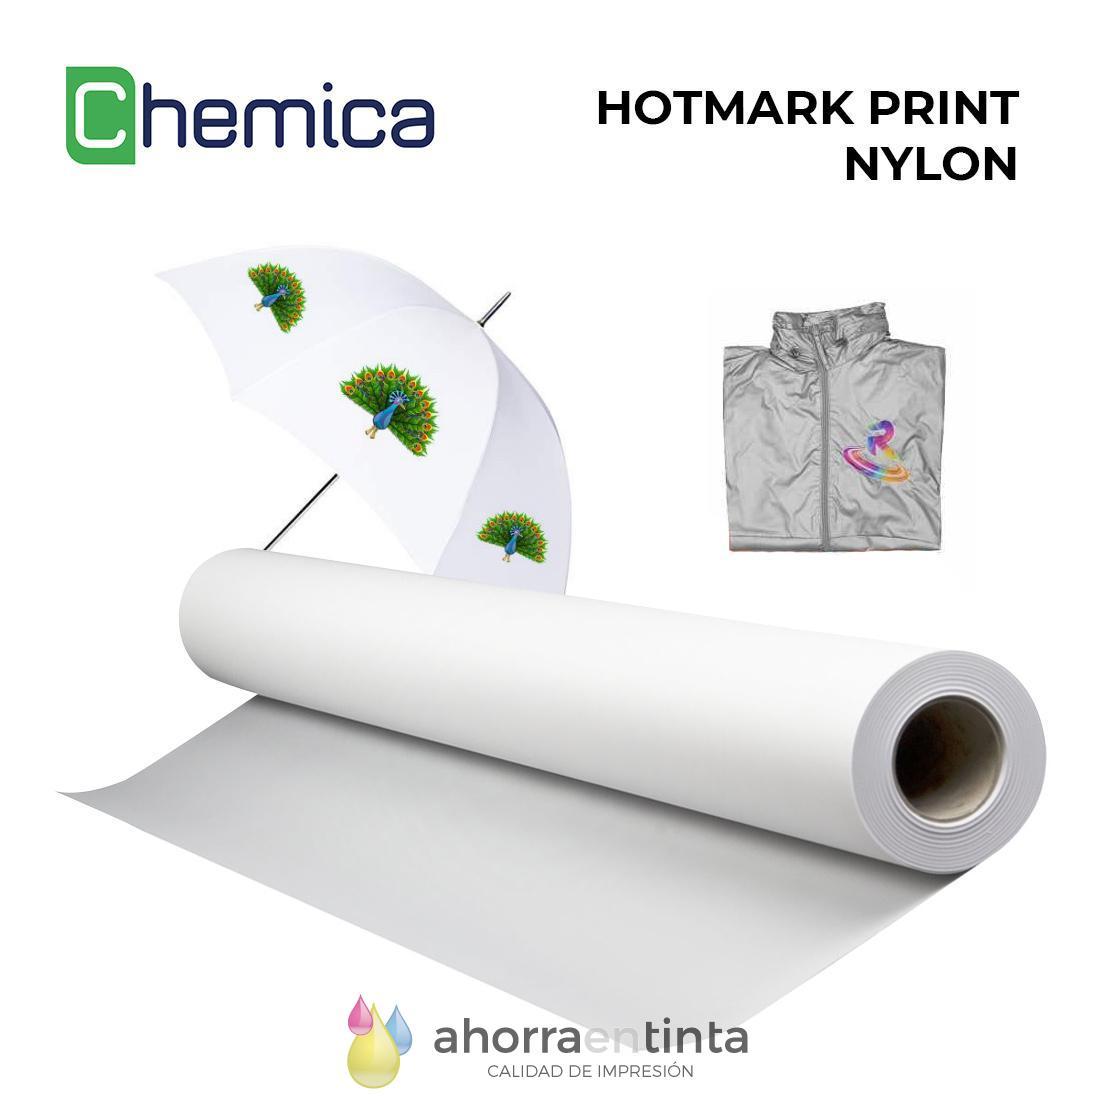 Se puede usar una impresora normal para vinilo textil imprimible?